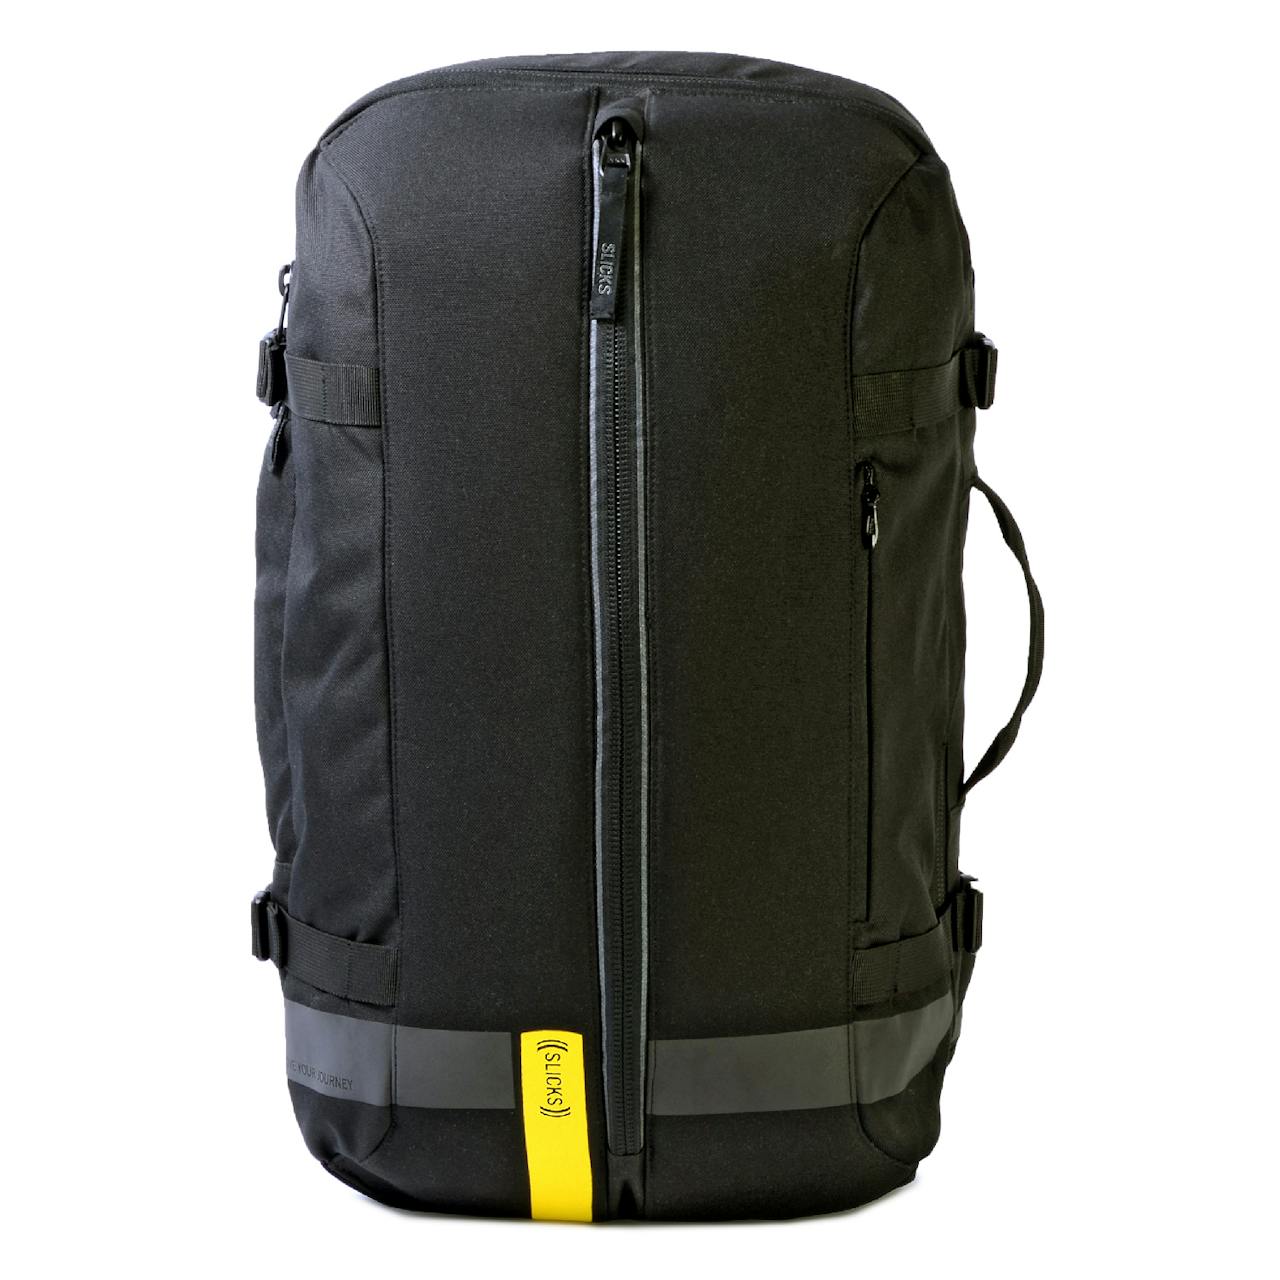 Slicks Pack - Modular Backpack